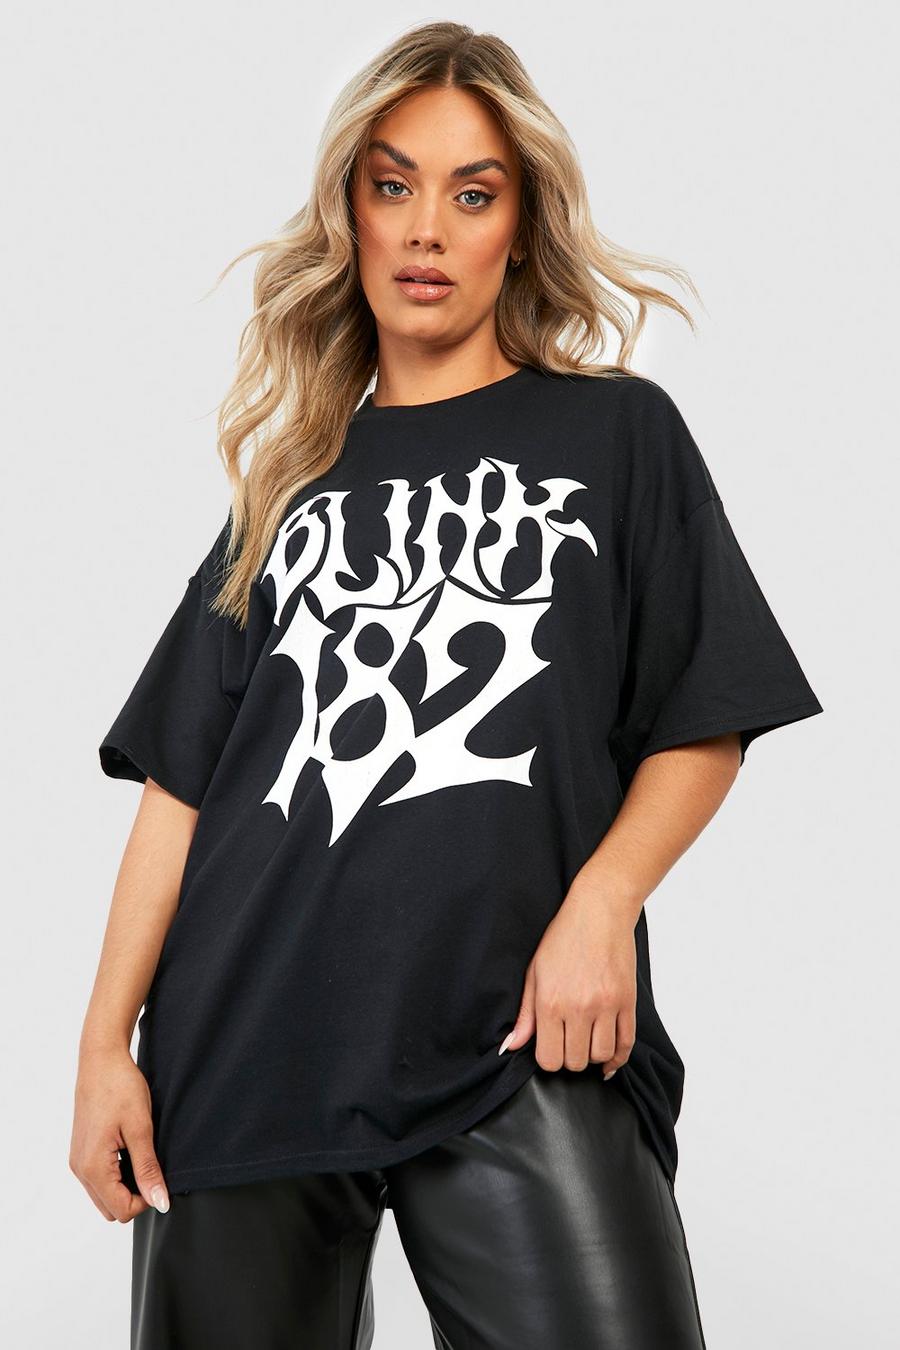 face Plus Oversized Blink 182 License T-shirt